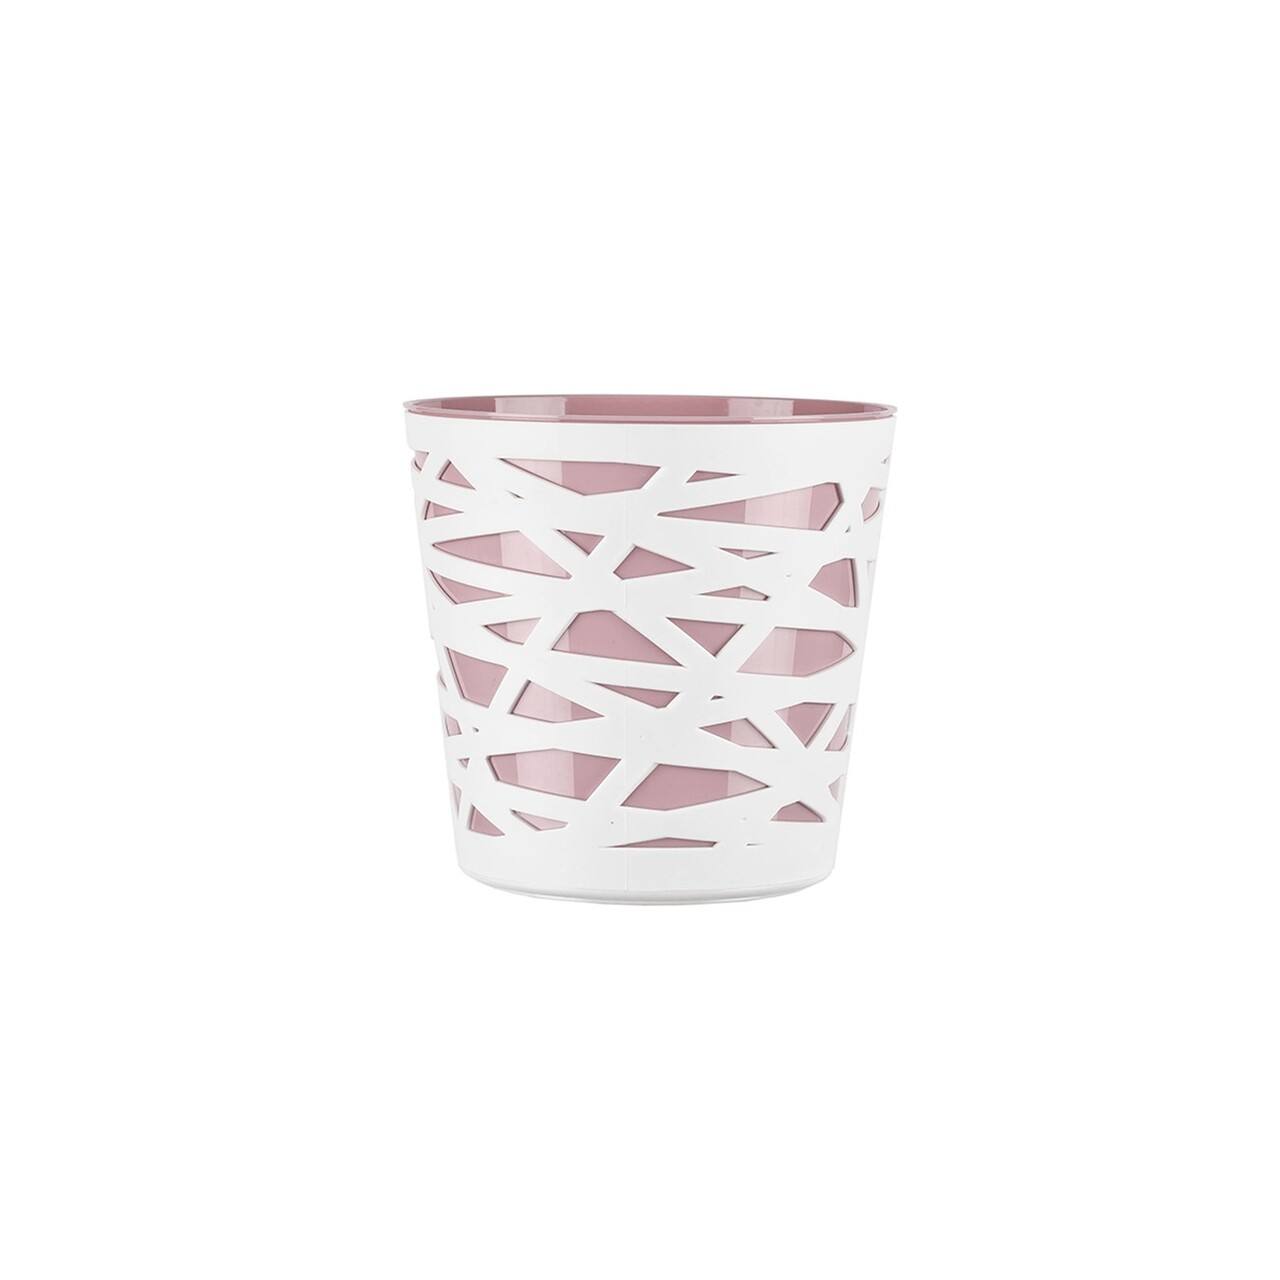 Beti Virágkaspó, 13 cm, műanyag, rózsaszín/fehér